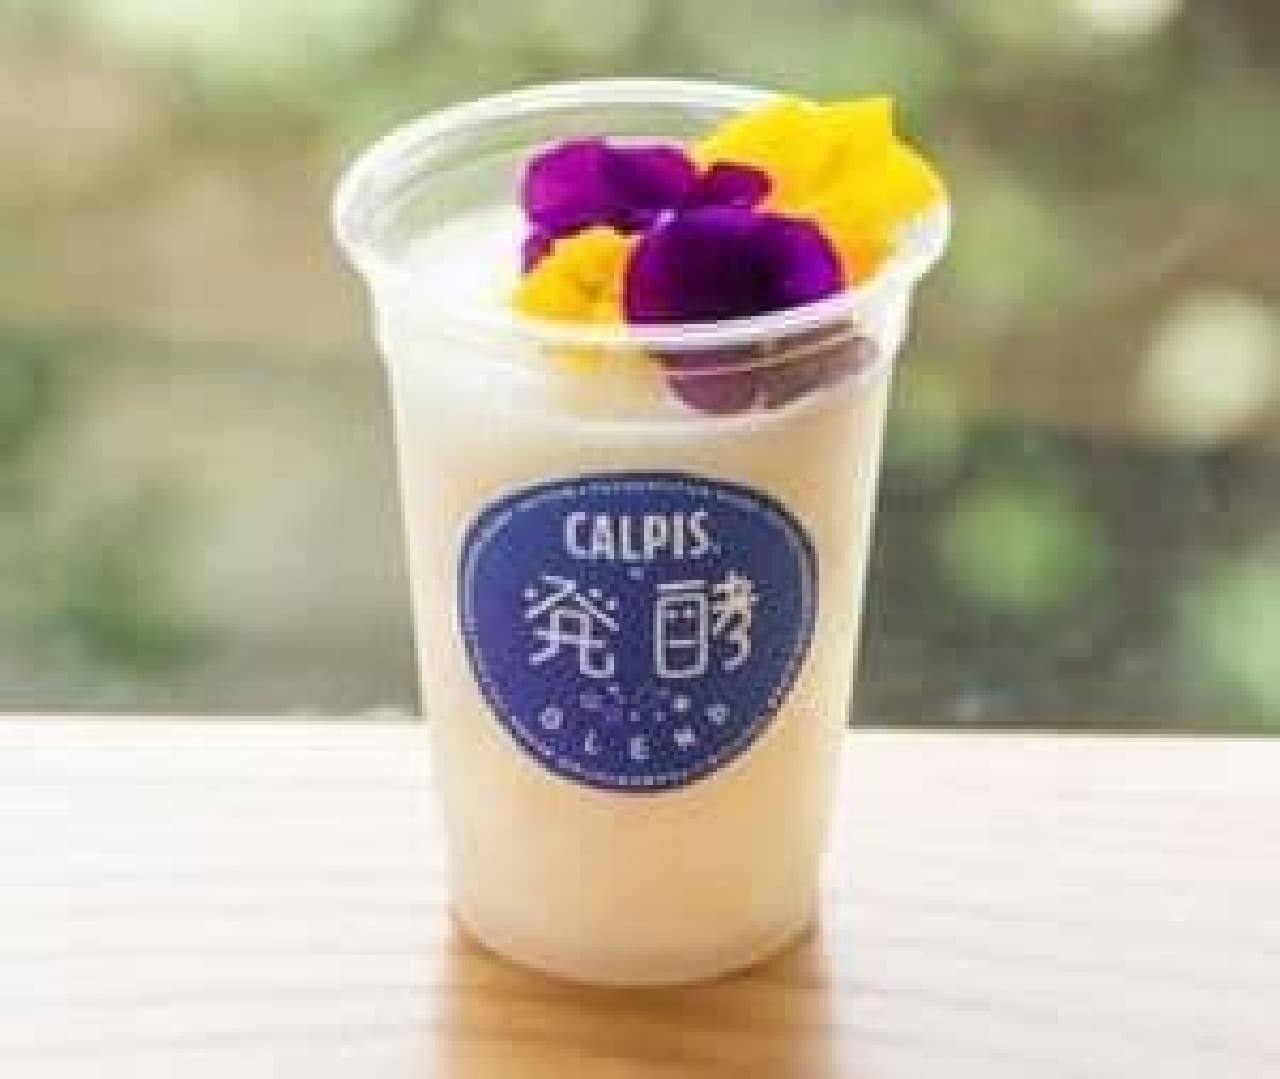 "CALPIS + Fermented BLEND" is an original drink that is a blend of fermented food "Calpis" and typical fermented foods.